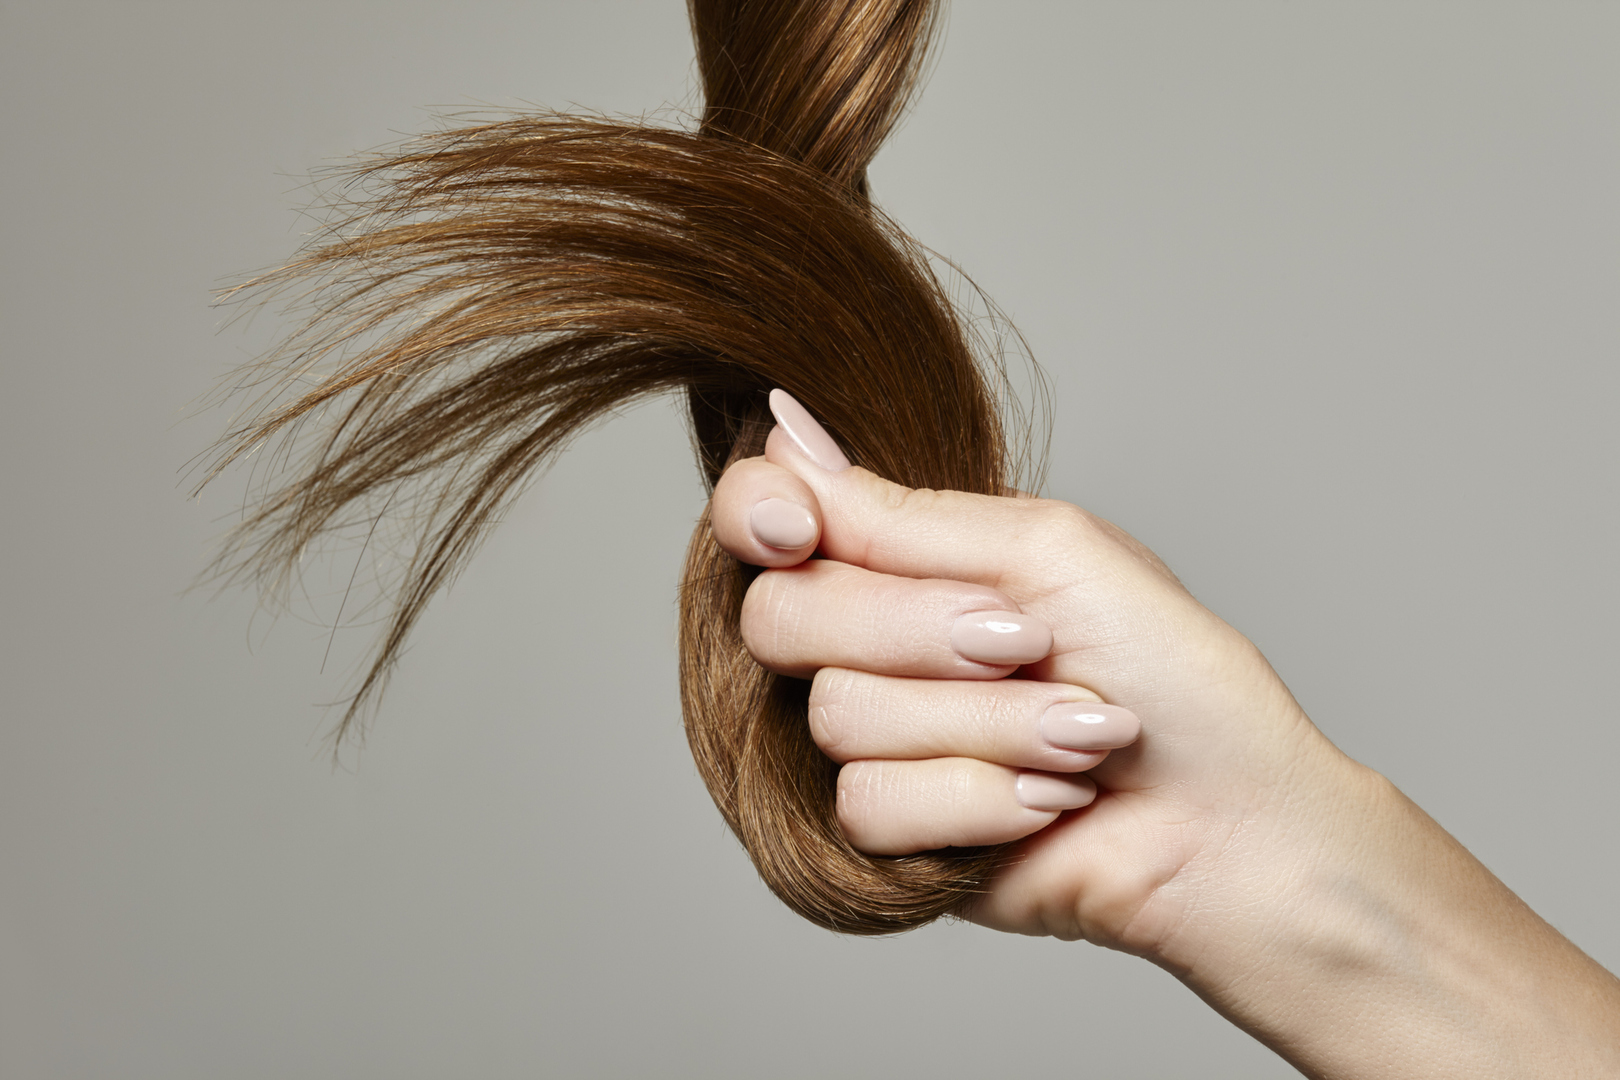 تغييرات في الشعر يمكن أن يشير ظهورها إلى مرض ألزهايمر